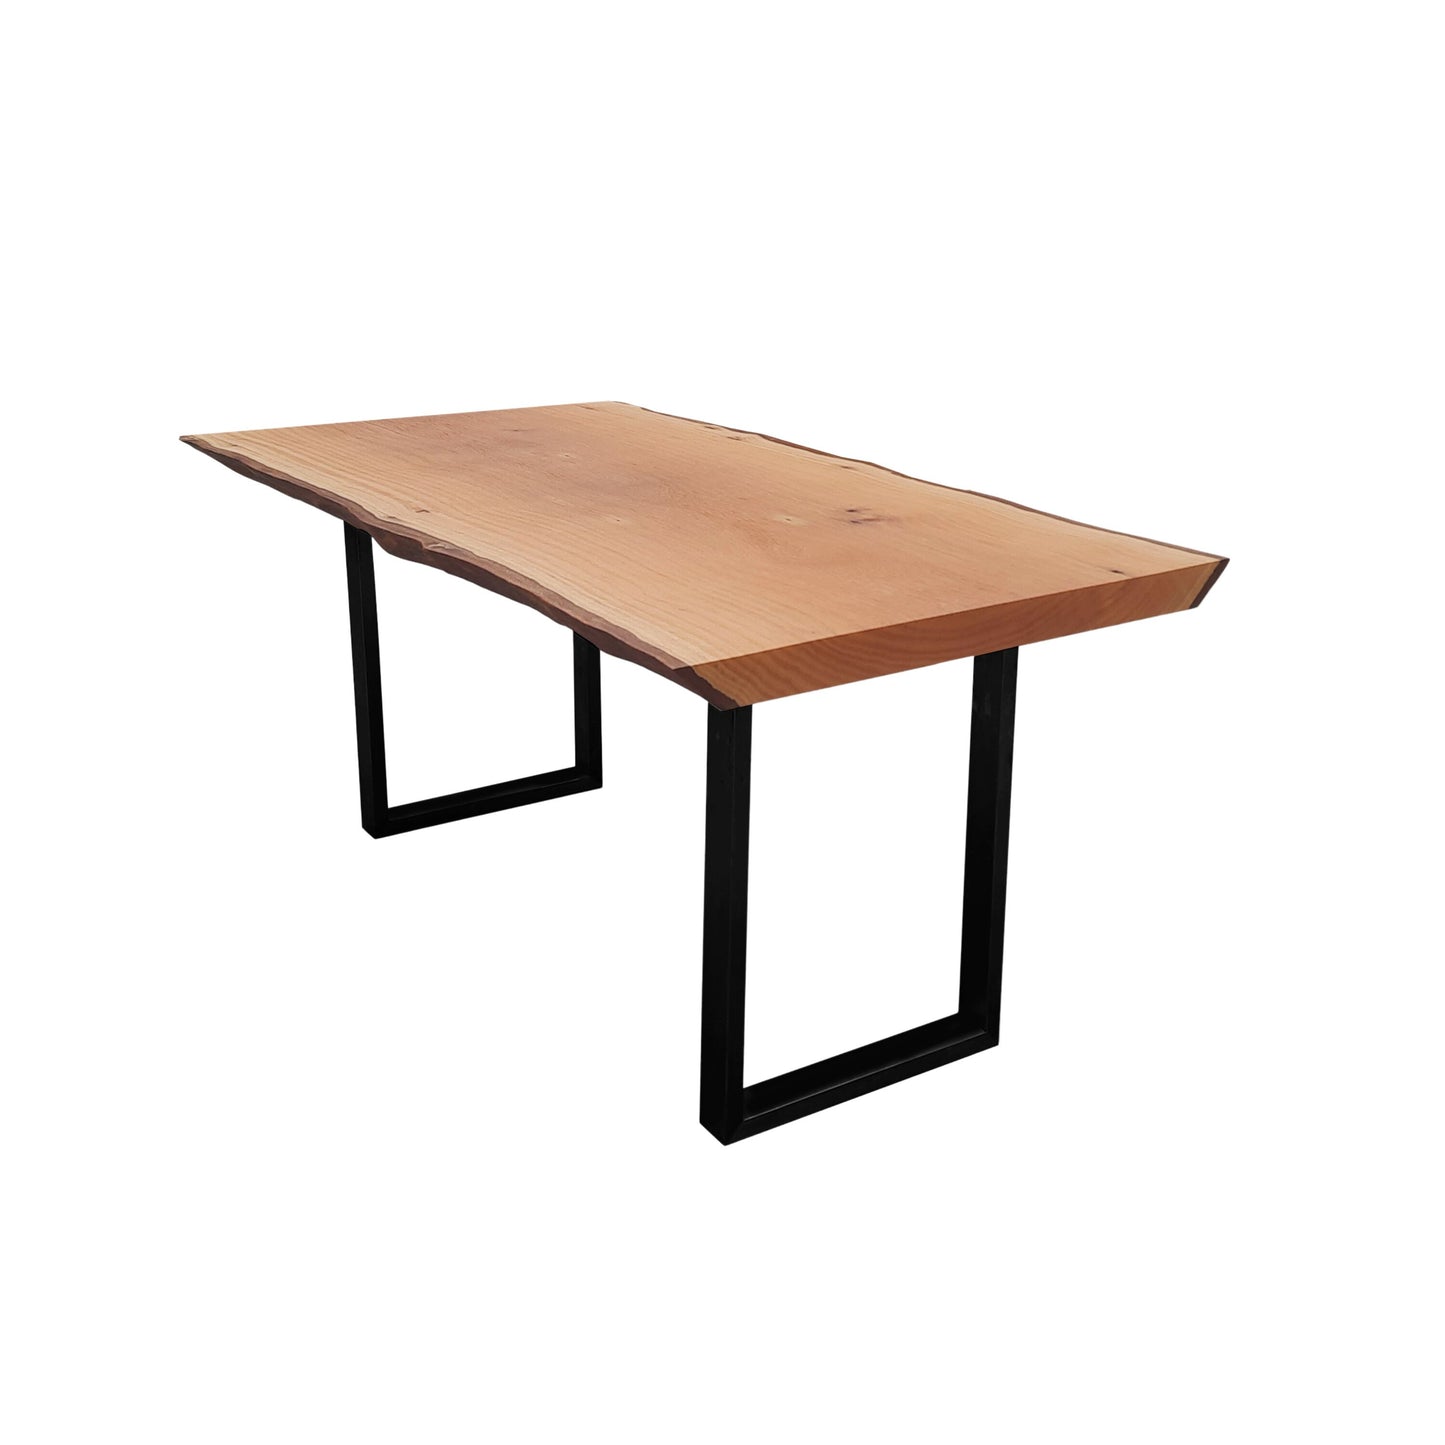 mesa madeira 6 lugares